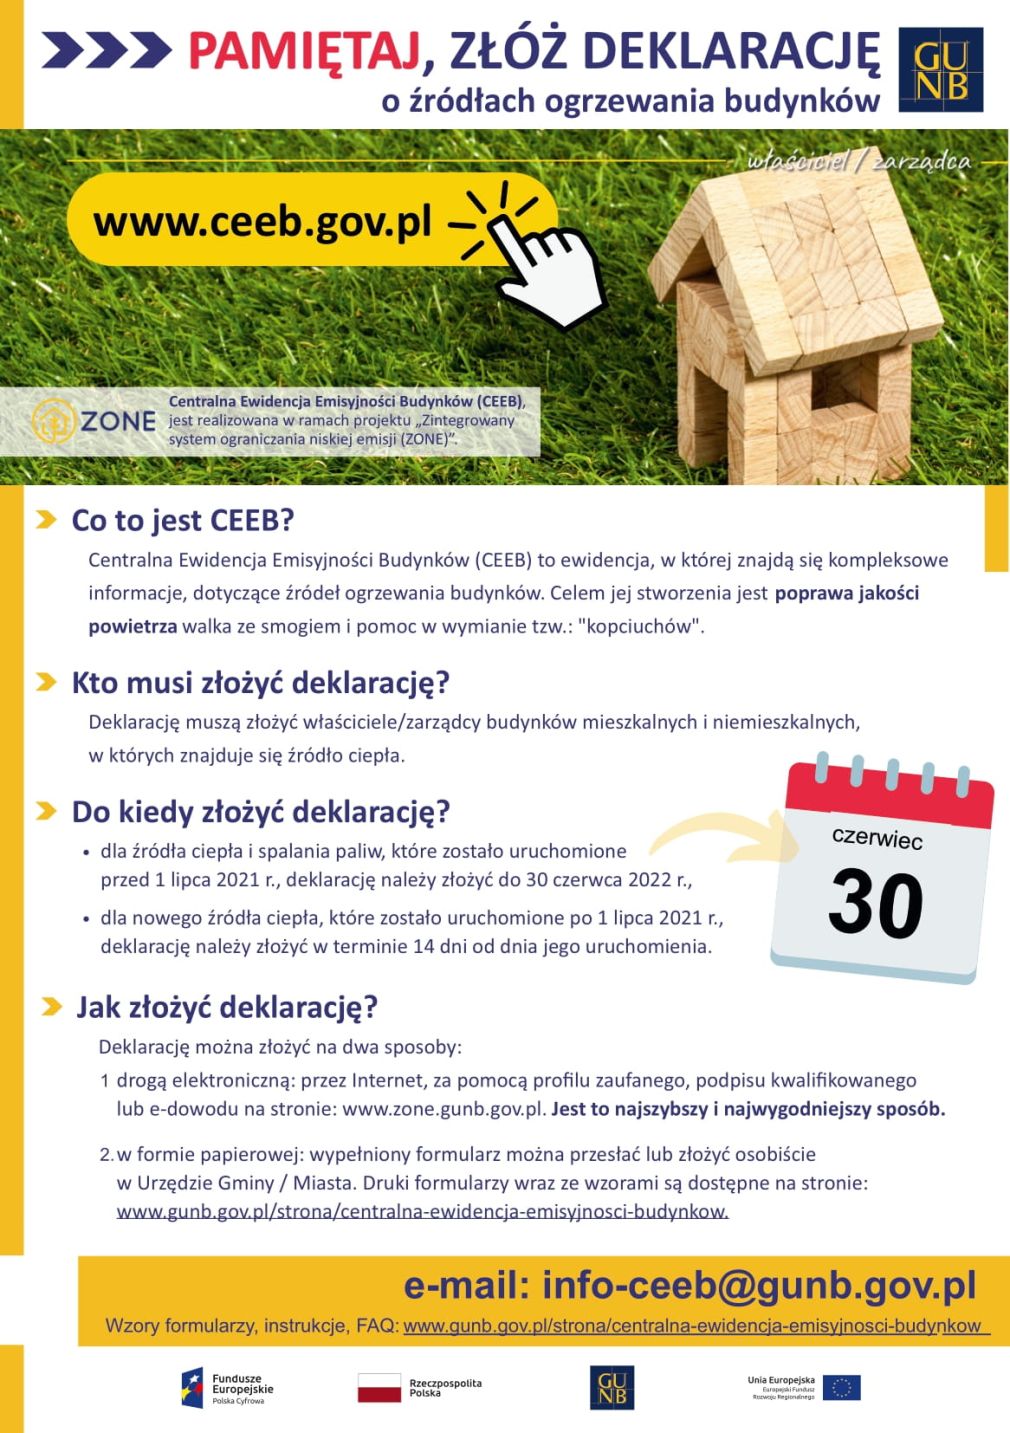 Uwaga! 30 czerwca 2022 r. mija termin obowiązkowego zgłoszenia źródła ogrzewania do Centralnej Ewidencji Emisyjności Budynków (CEEB)